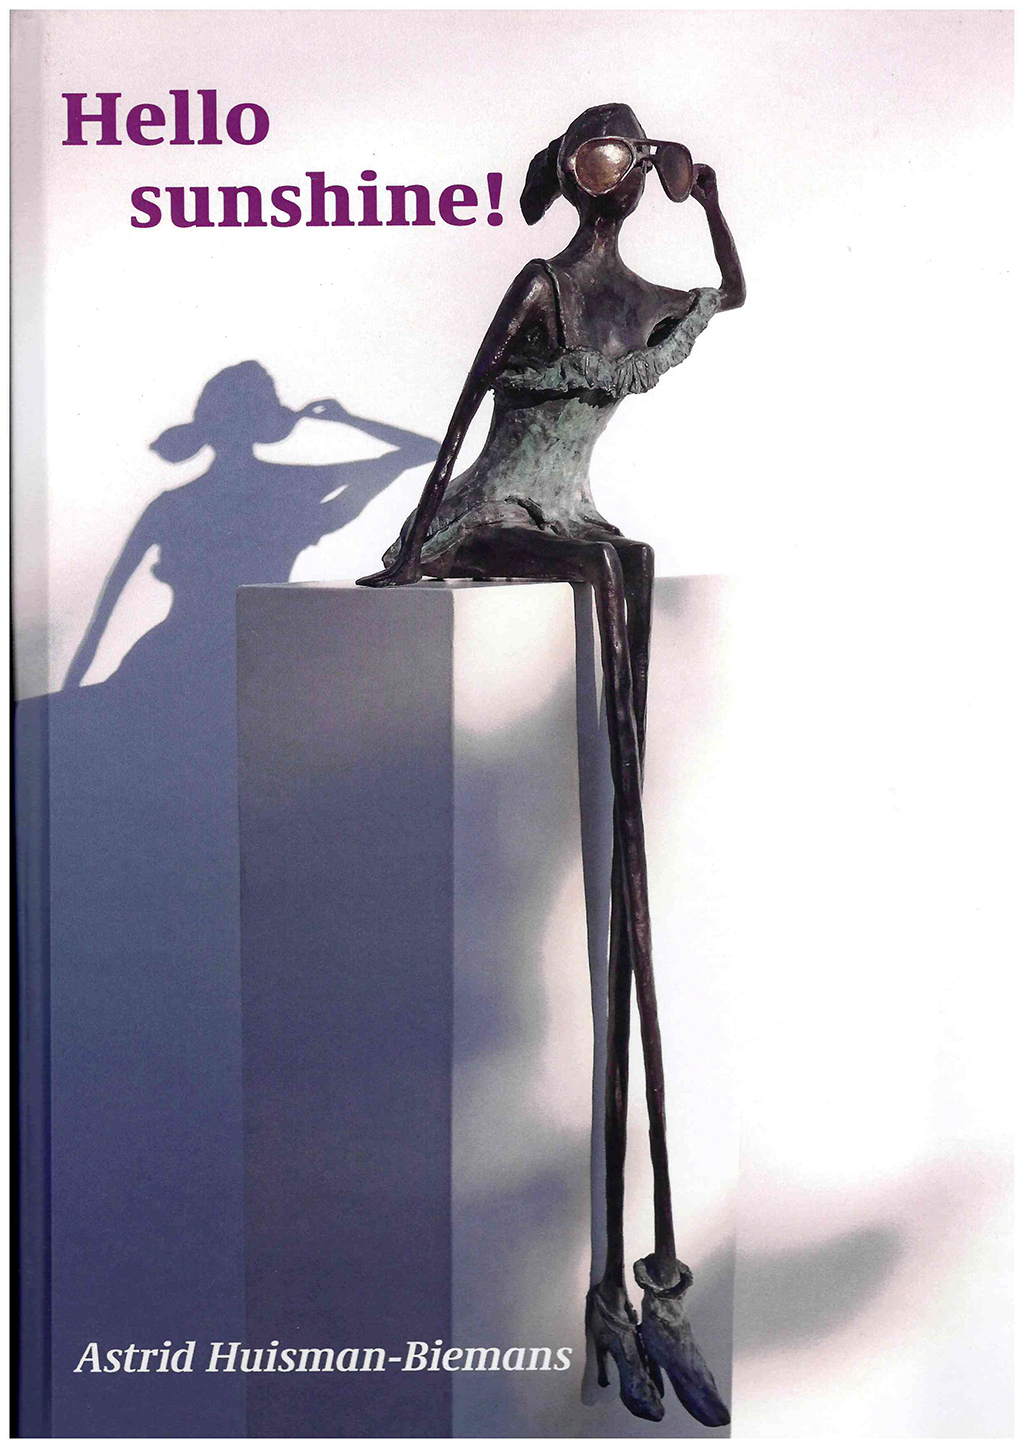 My new book: HELLO SUNSHINE! - Astrid Huisman-Biemans